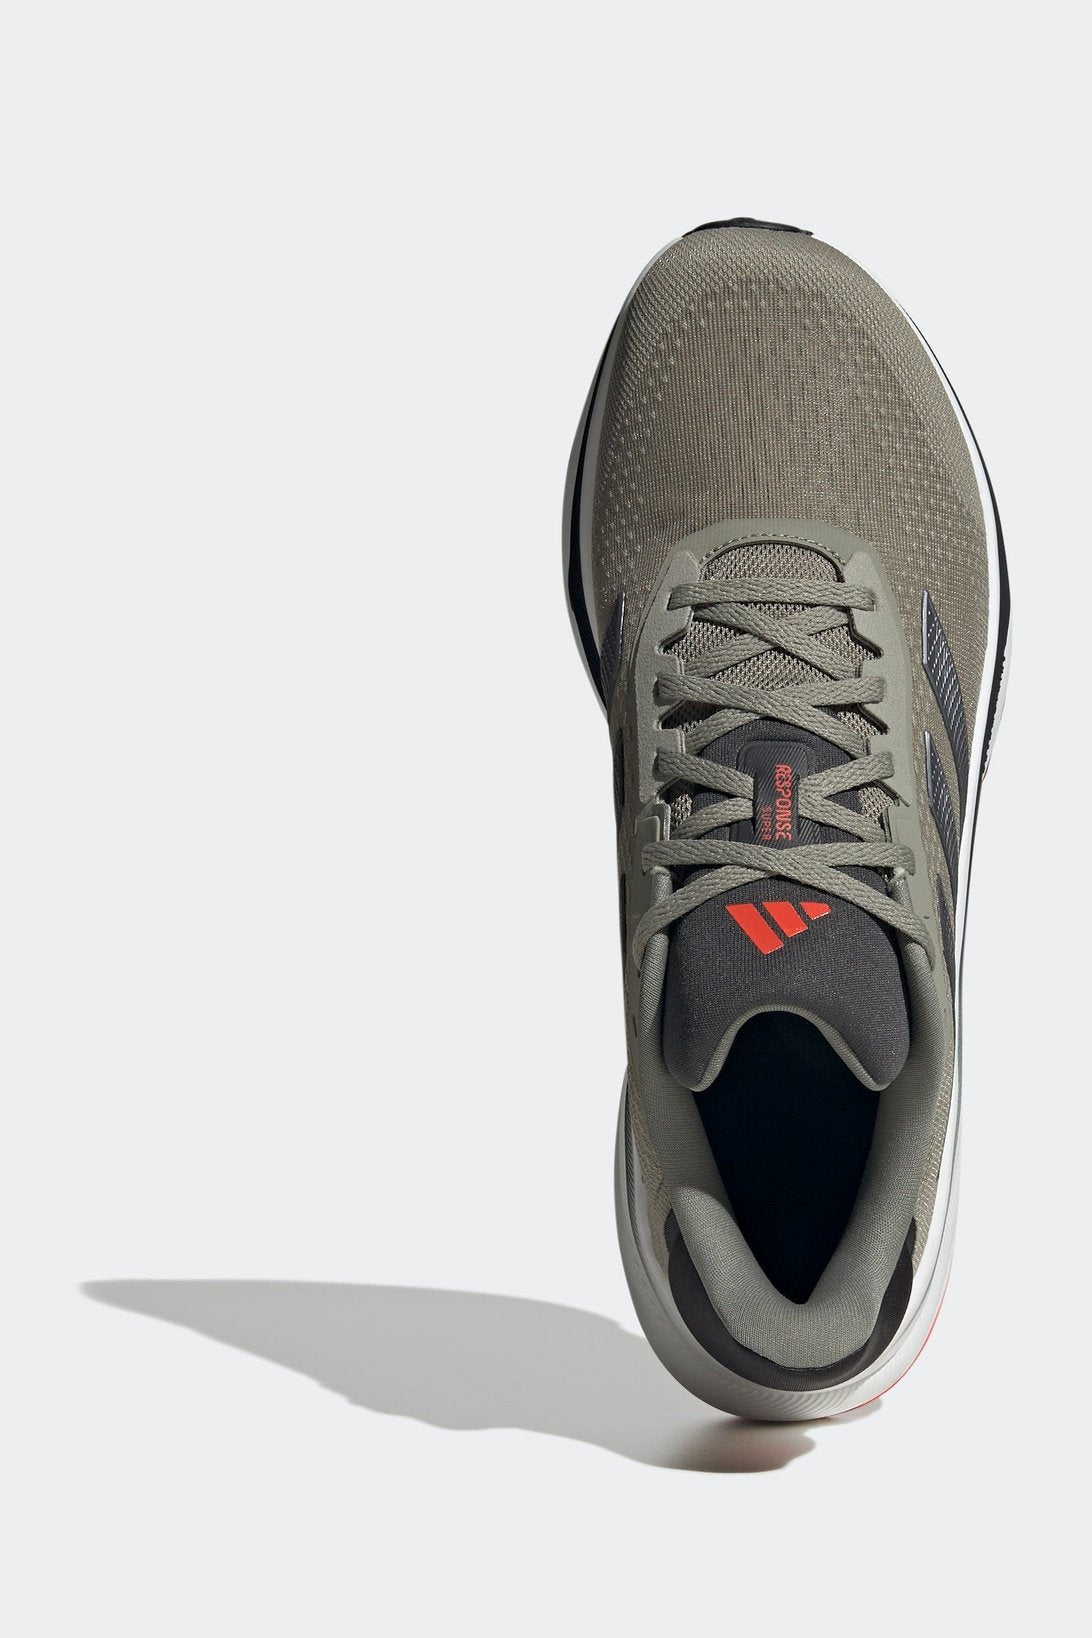 נעלי ספורט לגברים RESPONSE SUPER בצבע אפור כהה ואדום